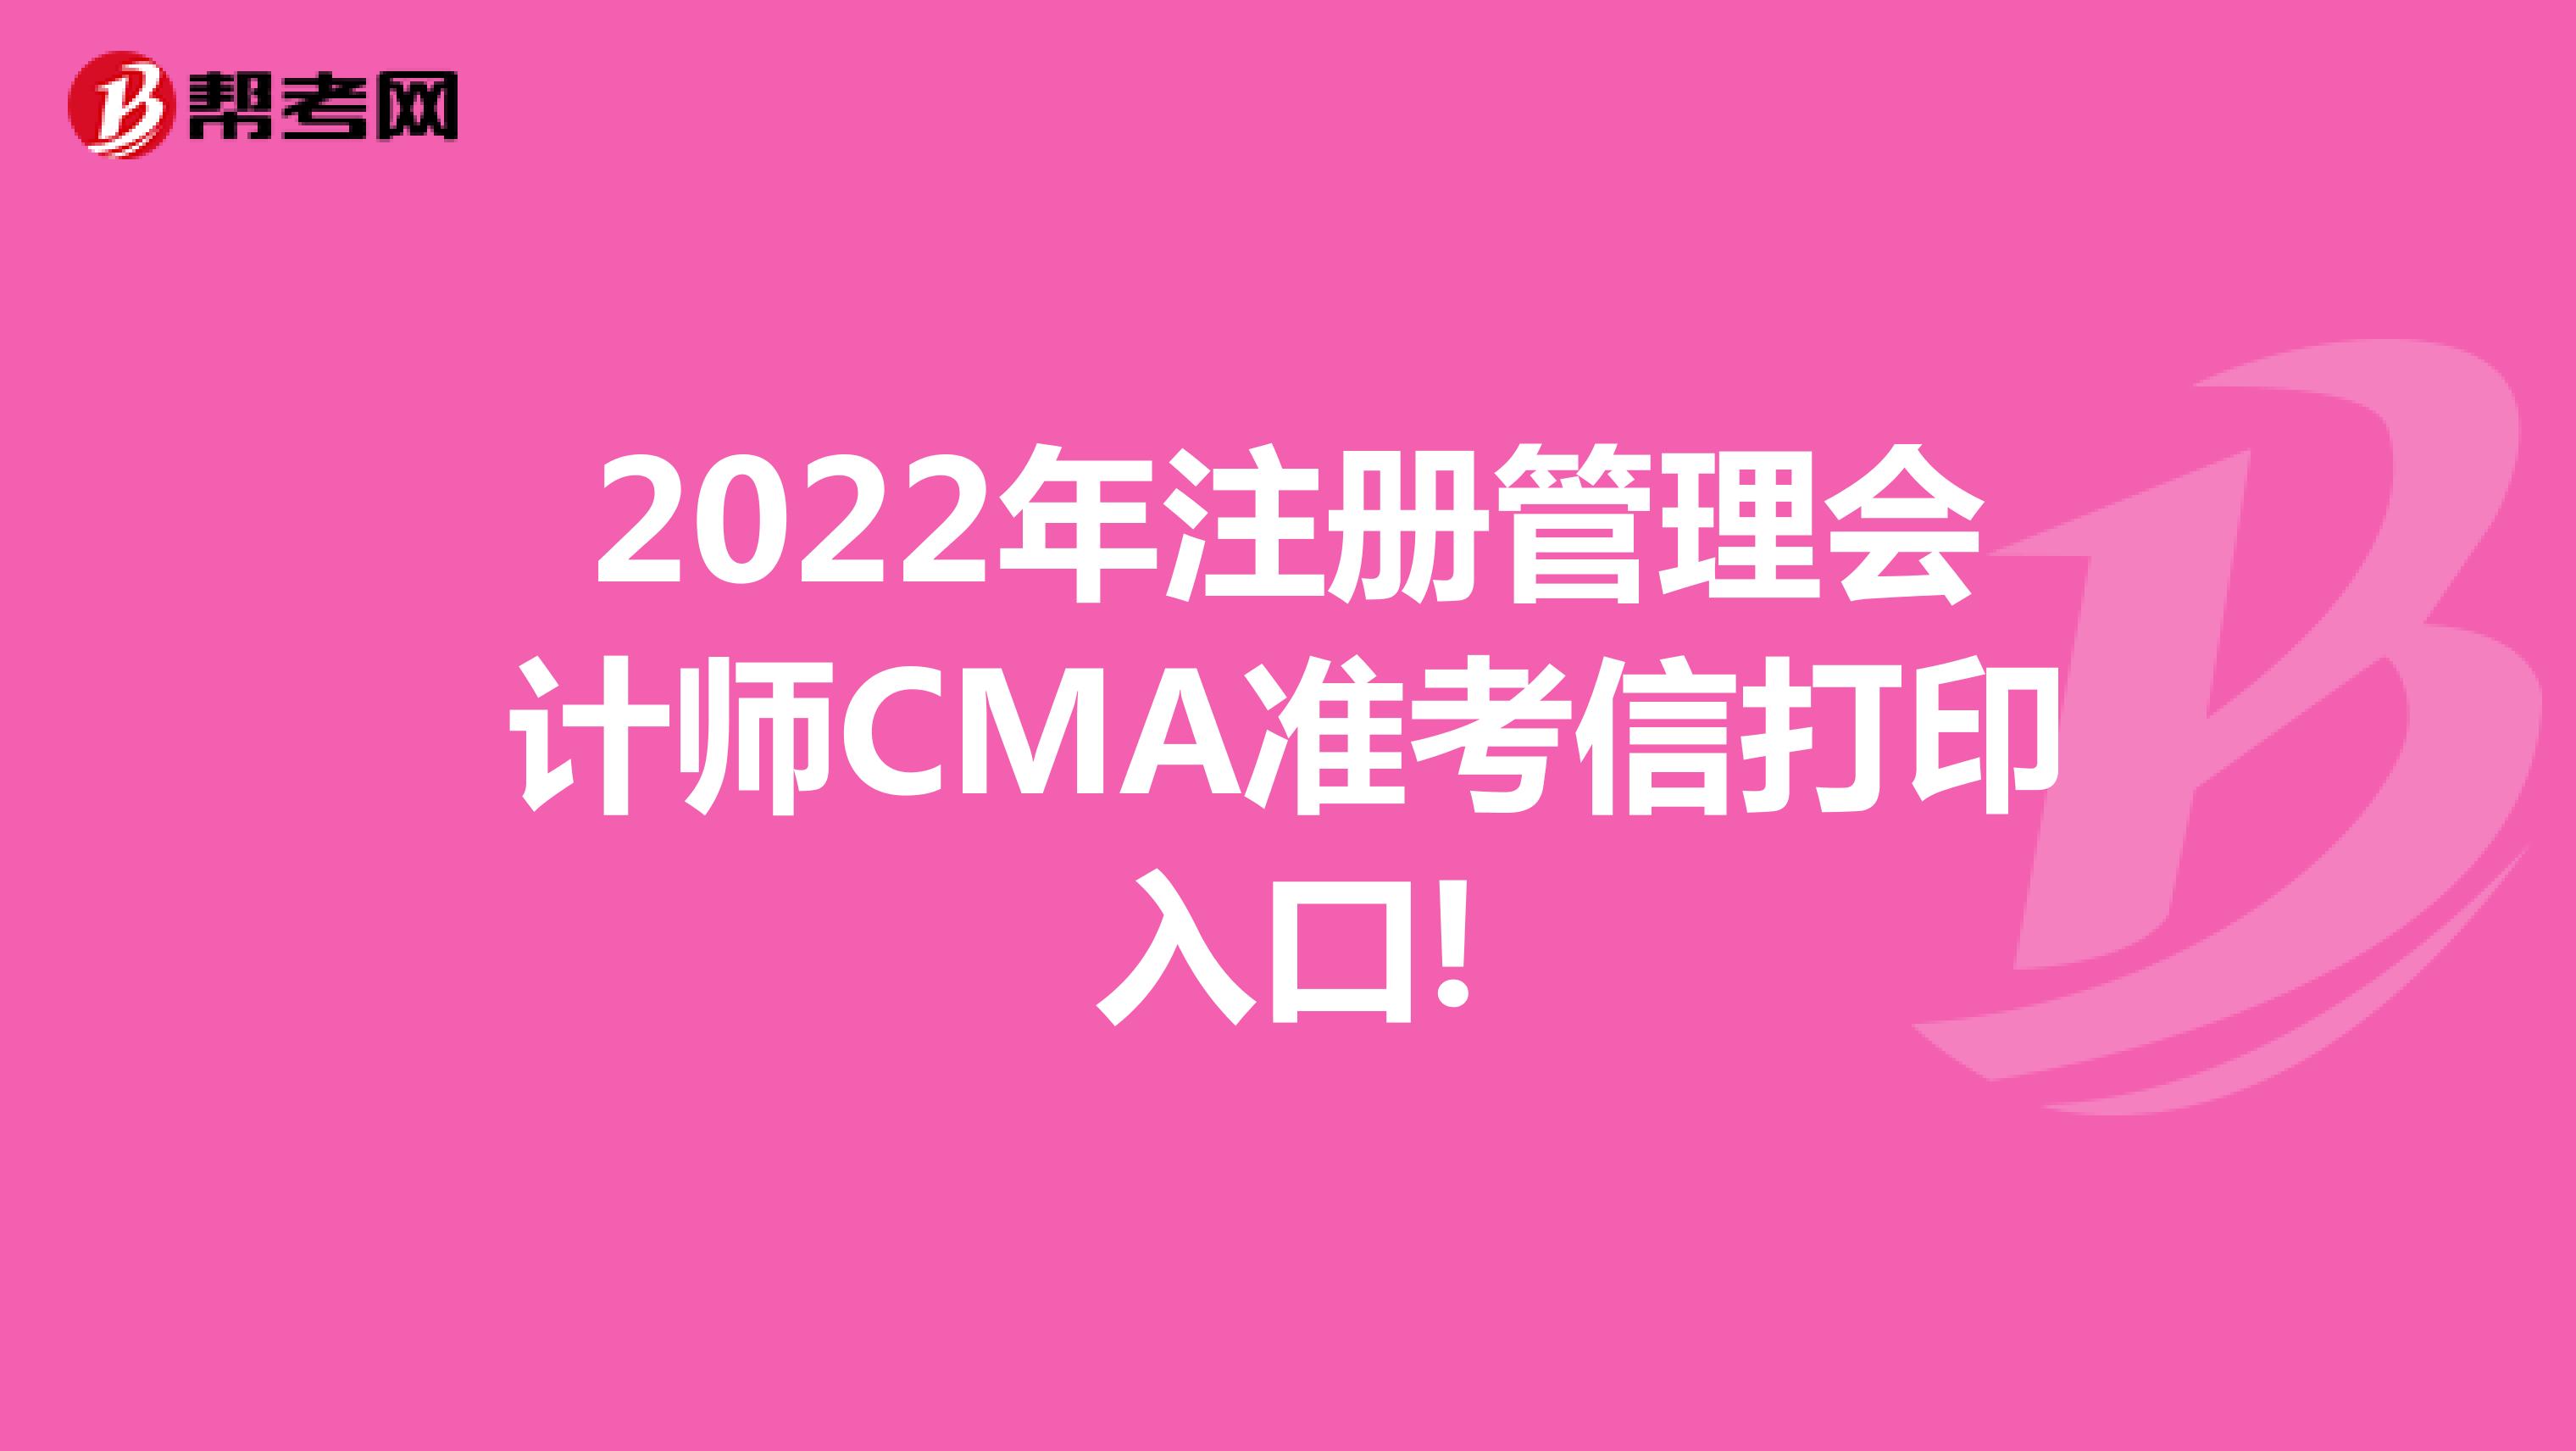 2022年注册管理会计师CMA准考信打印入口!